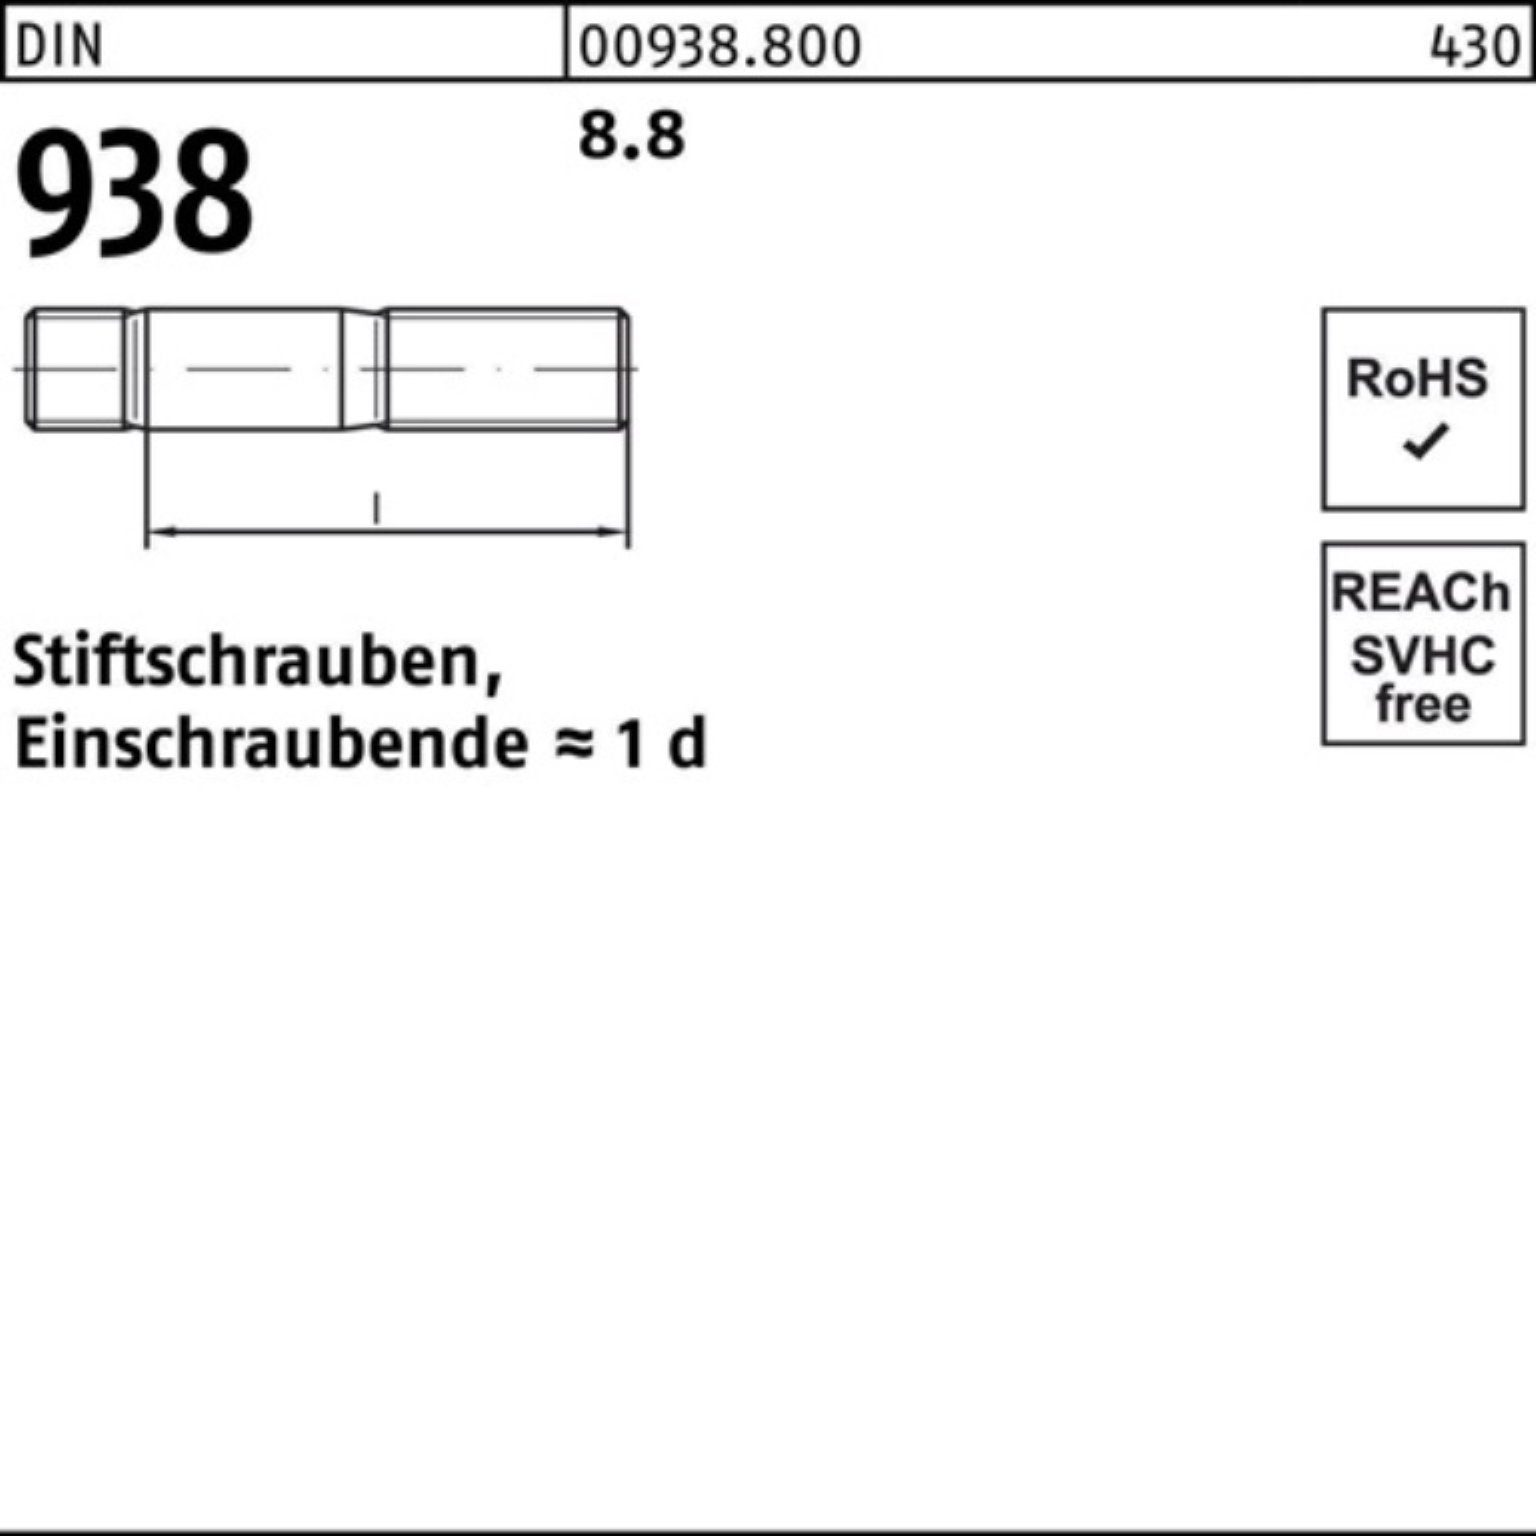 10 Stiftschraube 938 DIN 50 M24x Stück 938 8.8 DIN Stiftschraube Reyher 100er Sti 8.8 Pack